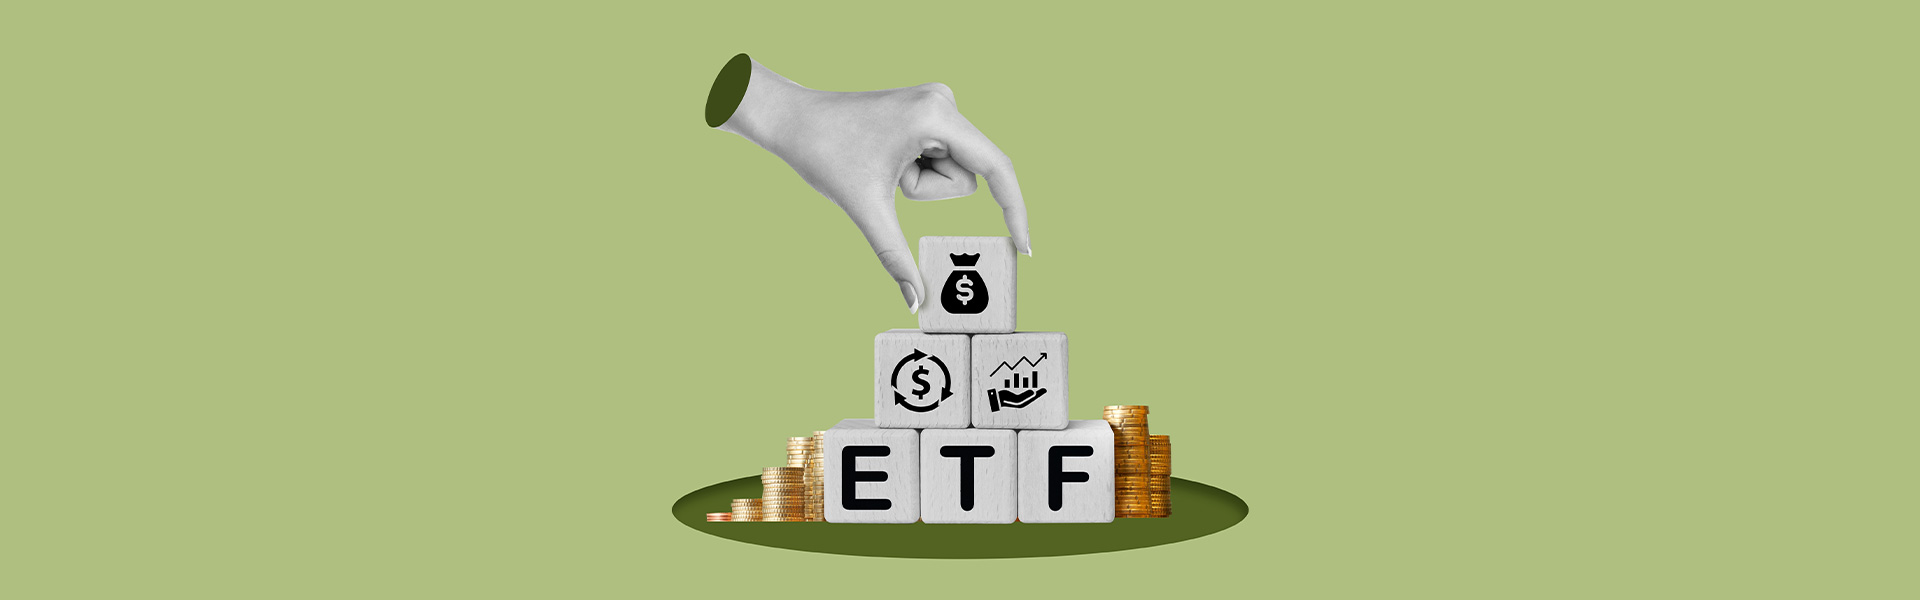 Chứng chỉ quỹ ETF là gì? Cách mua chứng chỉ quỹ ETF dễ dàng nhất